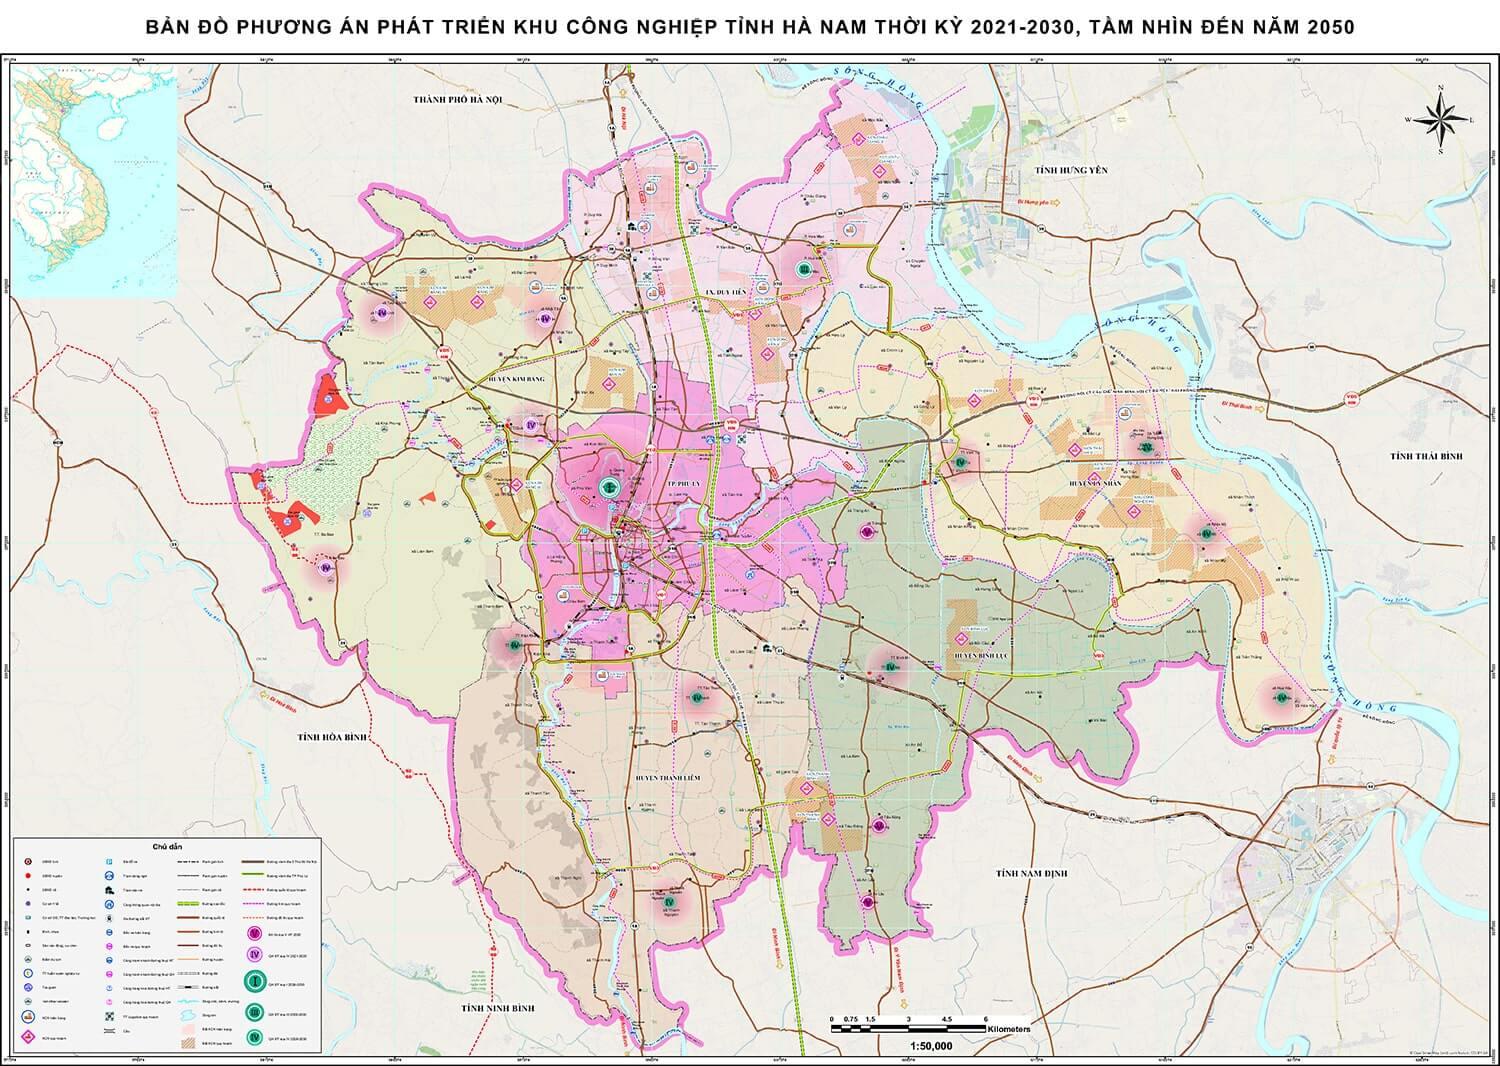 Bản đồ quy hoạch phát triển các khu công nghiệp tỉnh Hà Nam thời kỳ 2021 – 2030, tầm nhìn đến năm 2050 